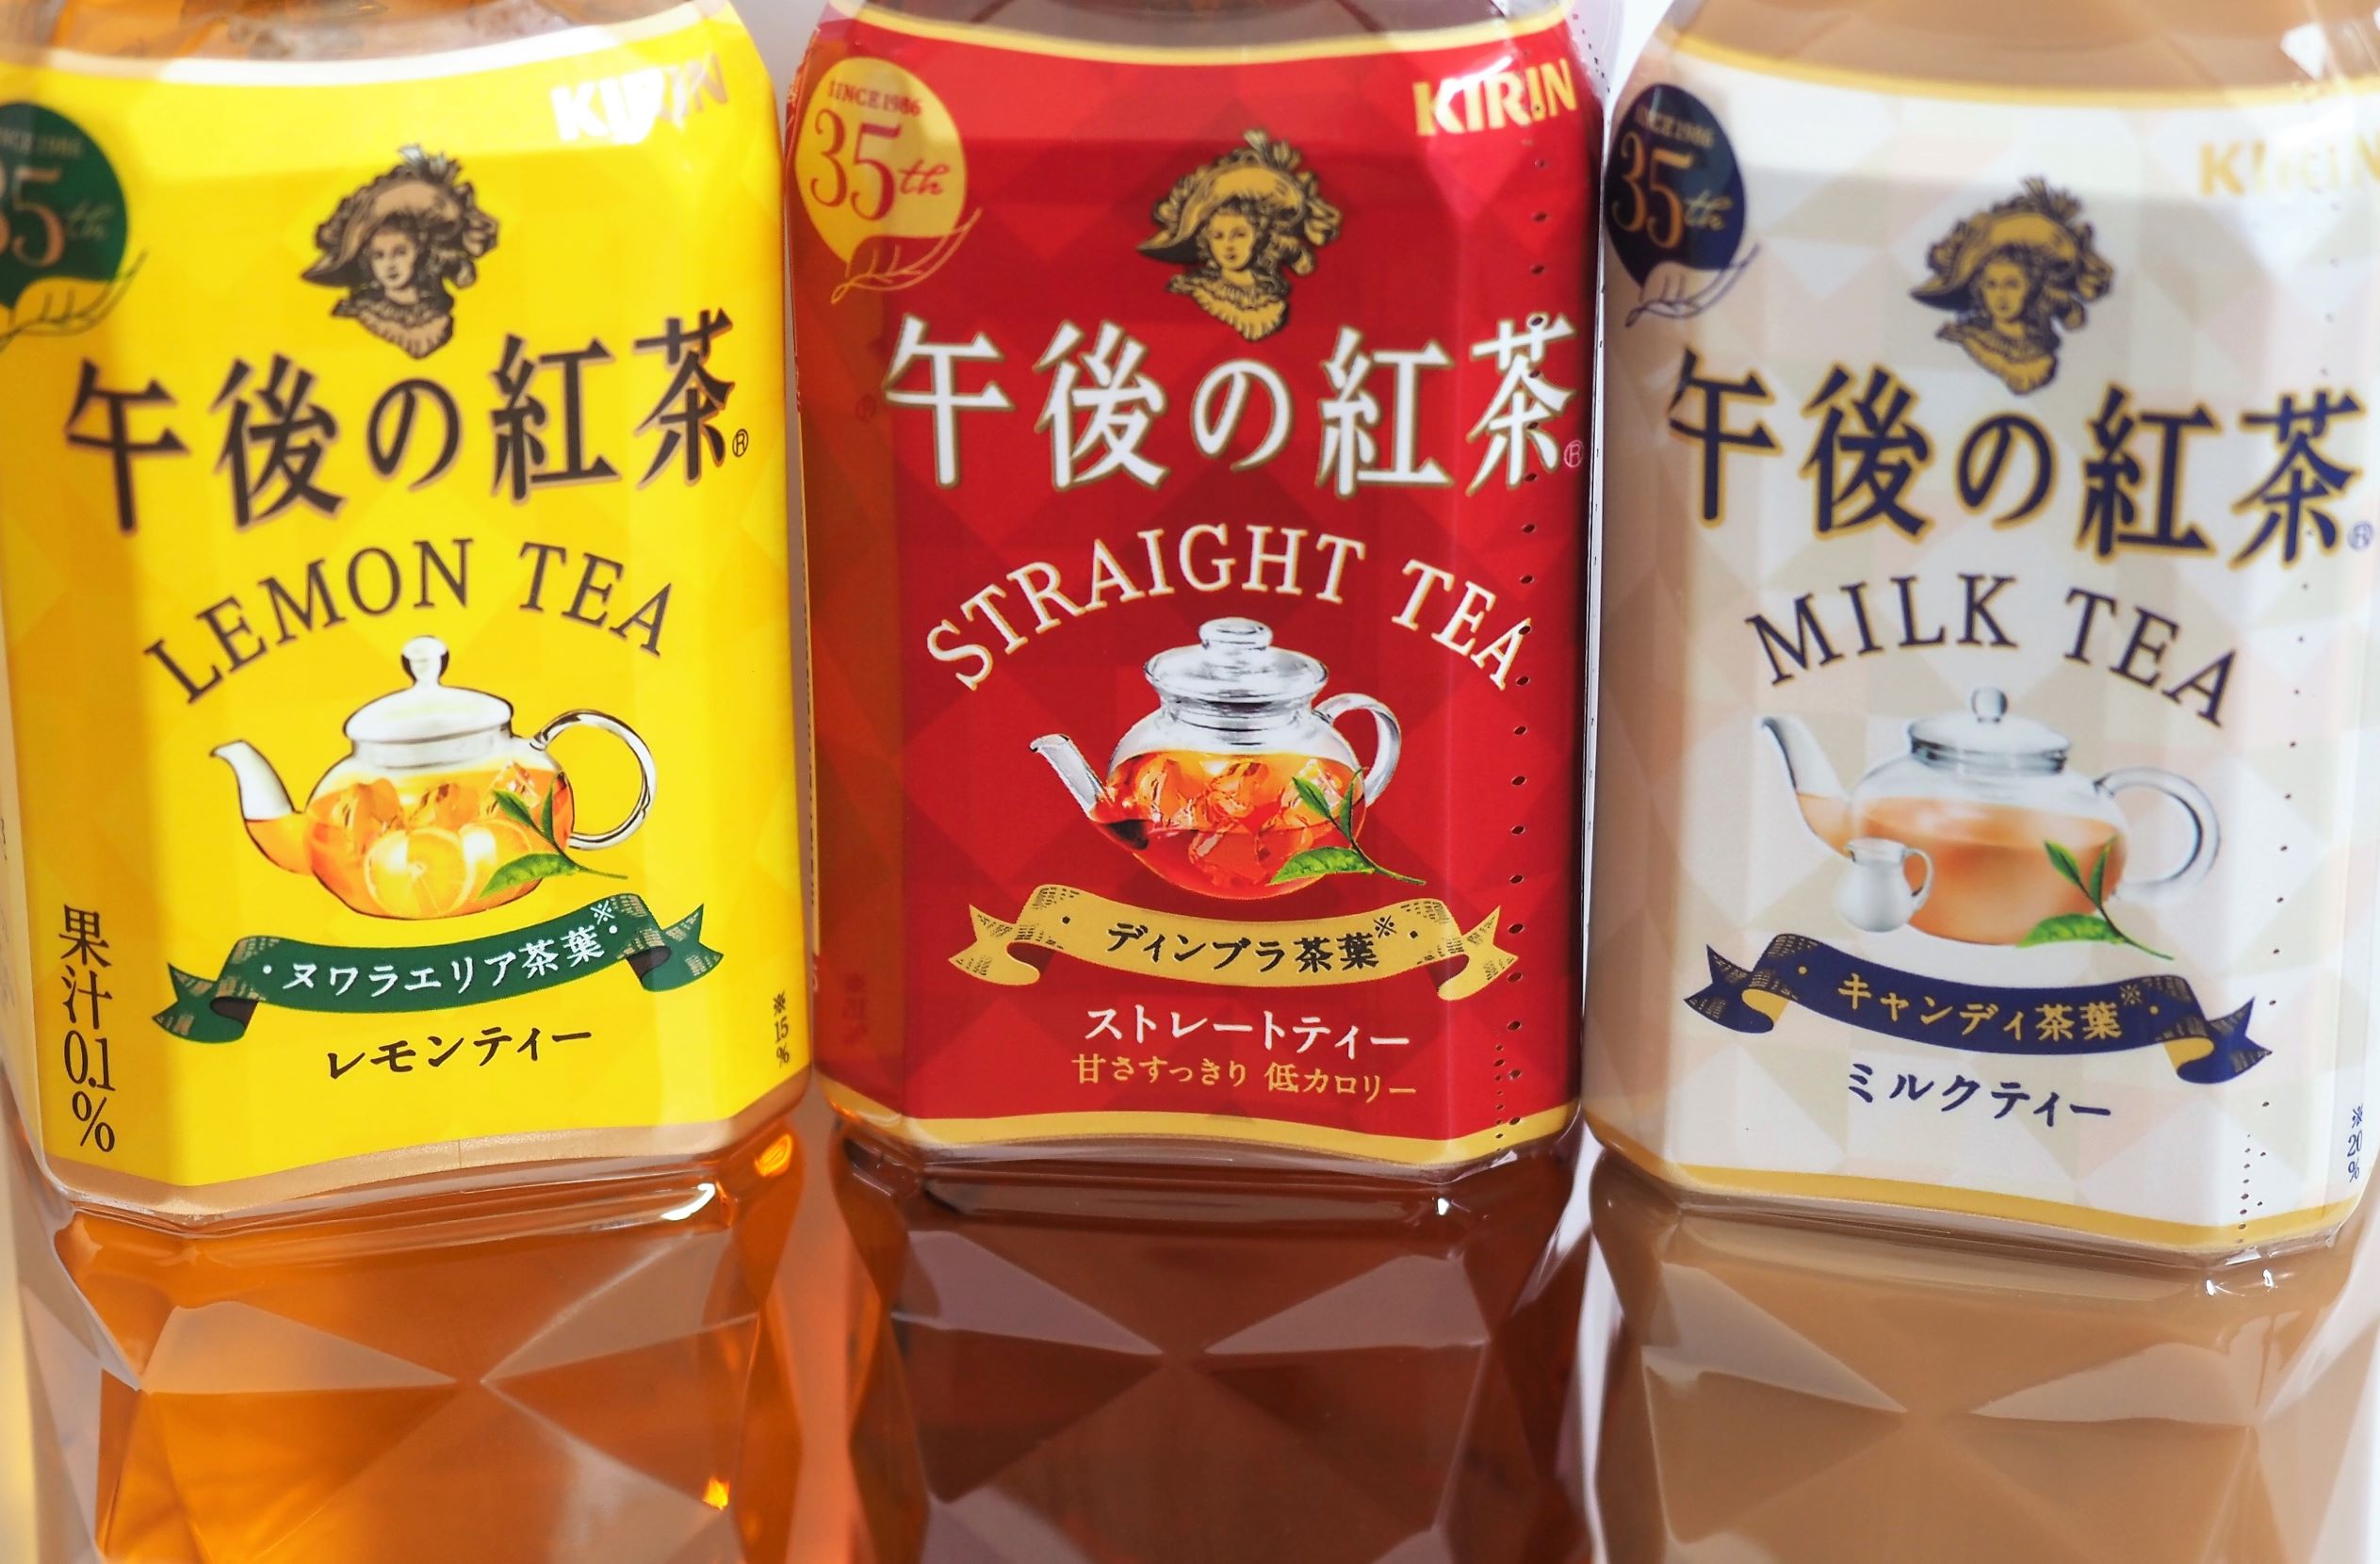 『午後の紅茶』のパッケージには、ストレートティーに「ディンブラ（20％使用）」、ミルクティーに「キャンディ（20％使用）」、レモンティーに「ヌワラエリア（15％使用）」などと使用茶葉（=地域名）が明記されている。スリランカには５大産地とも７大産地とも称される、それぞれに魅力の違う茶葉を産出する紅茶産地がある。そのバラエティーの豊富さは、世界中の紅茶の特色はスリランカ一国で用意できるといわれるほどだそうだ。 